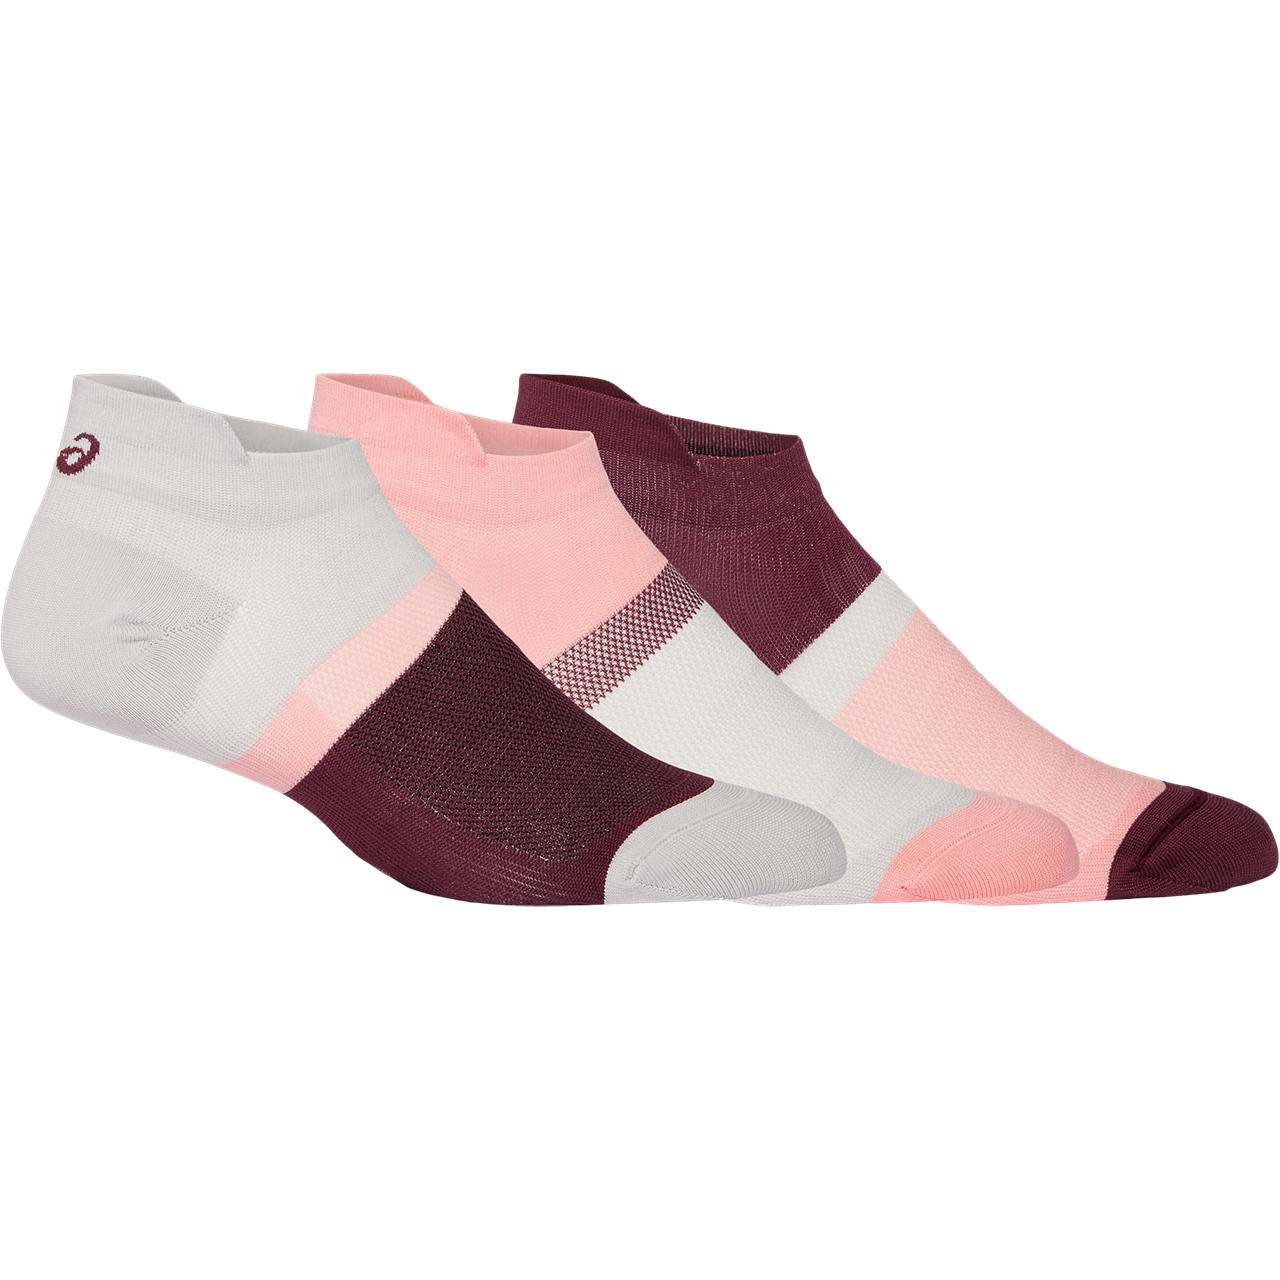 Produktbild von asics Color Block Ankle Socken - 3 Paar - frosted rose